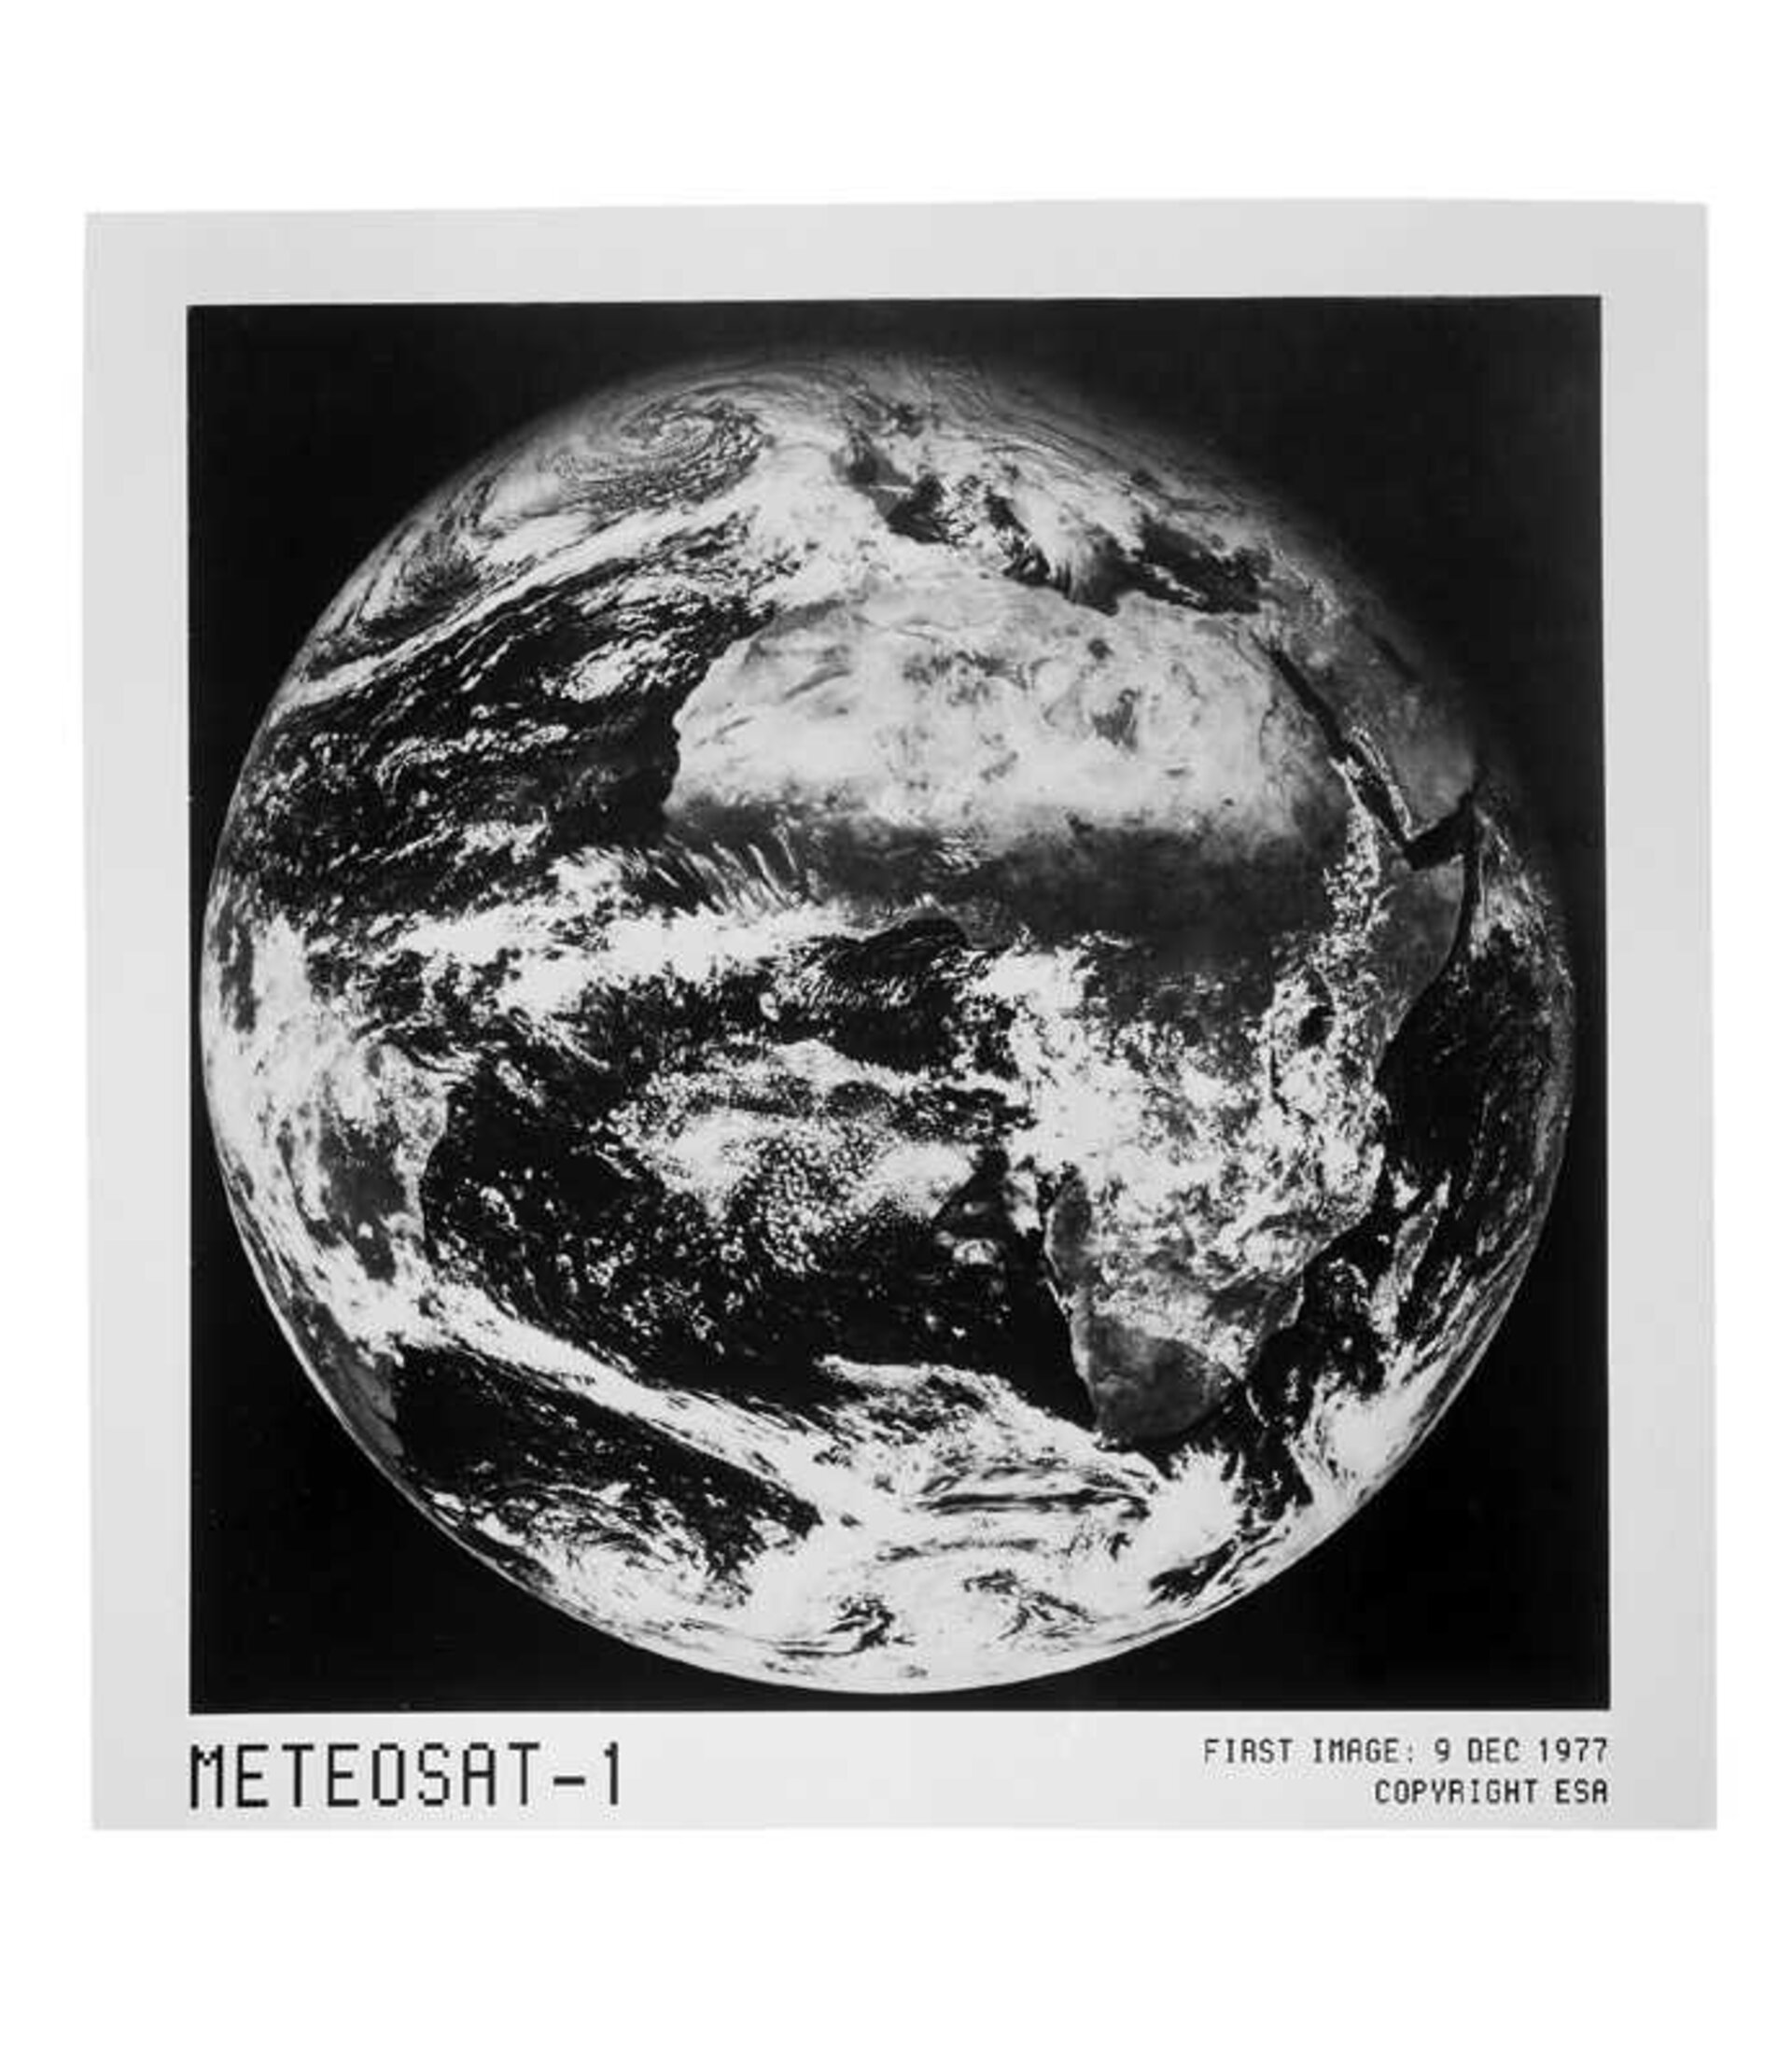 the first Meteosat satellite